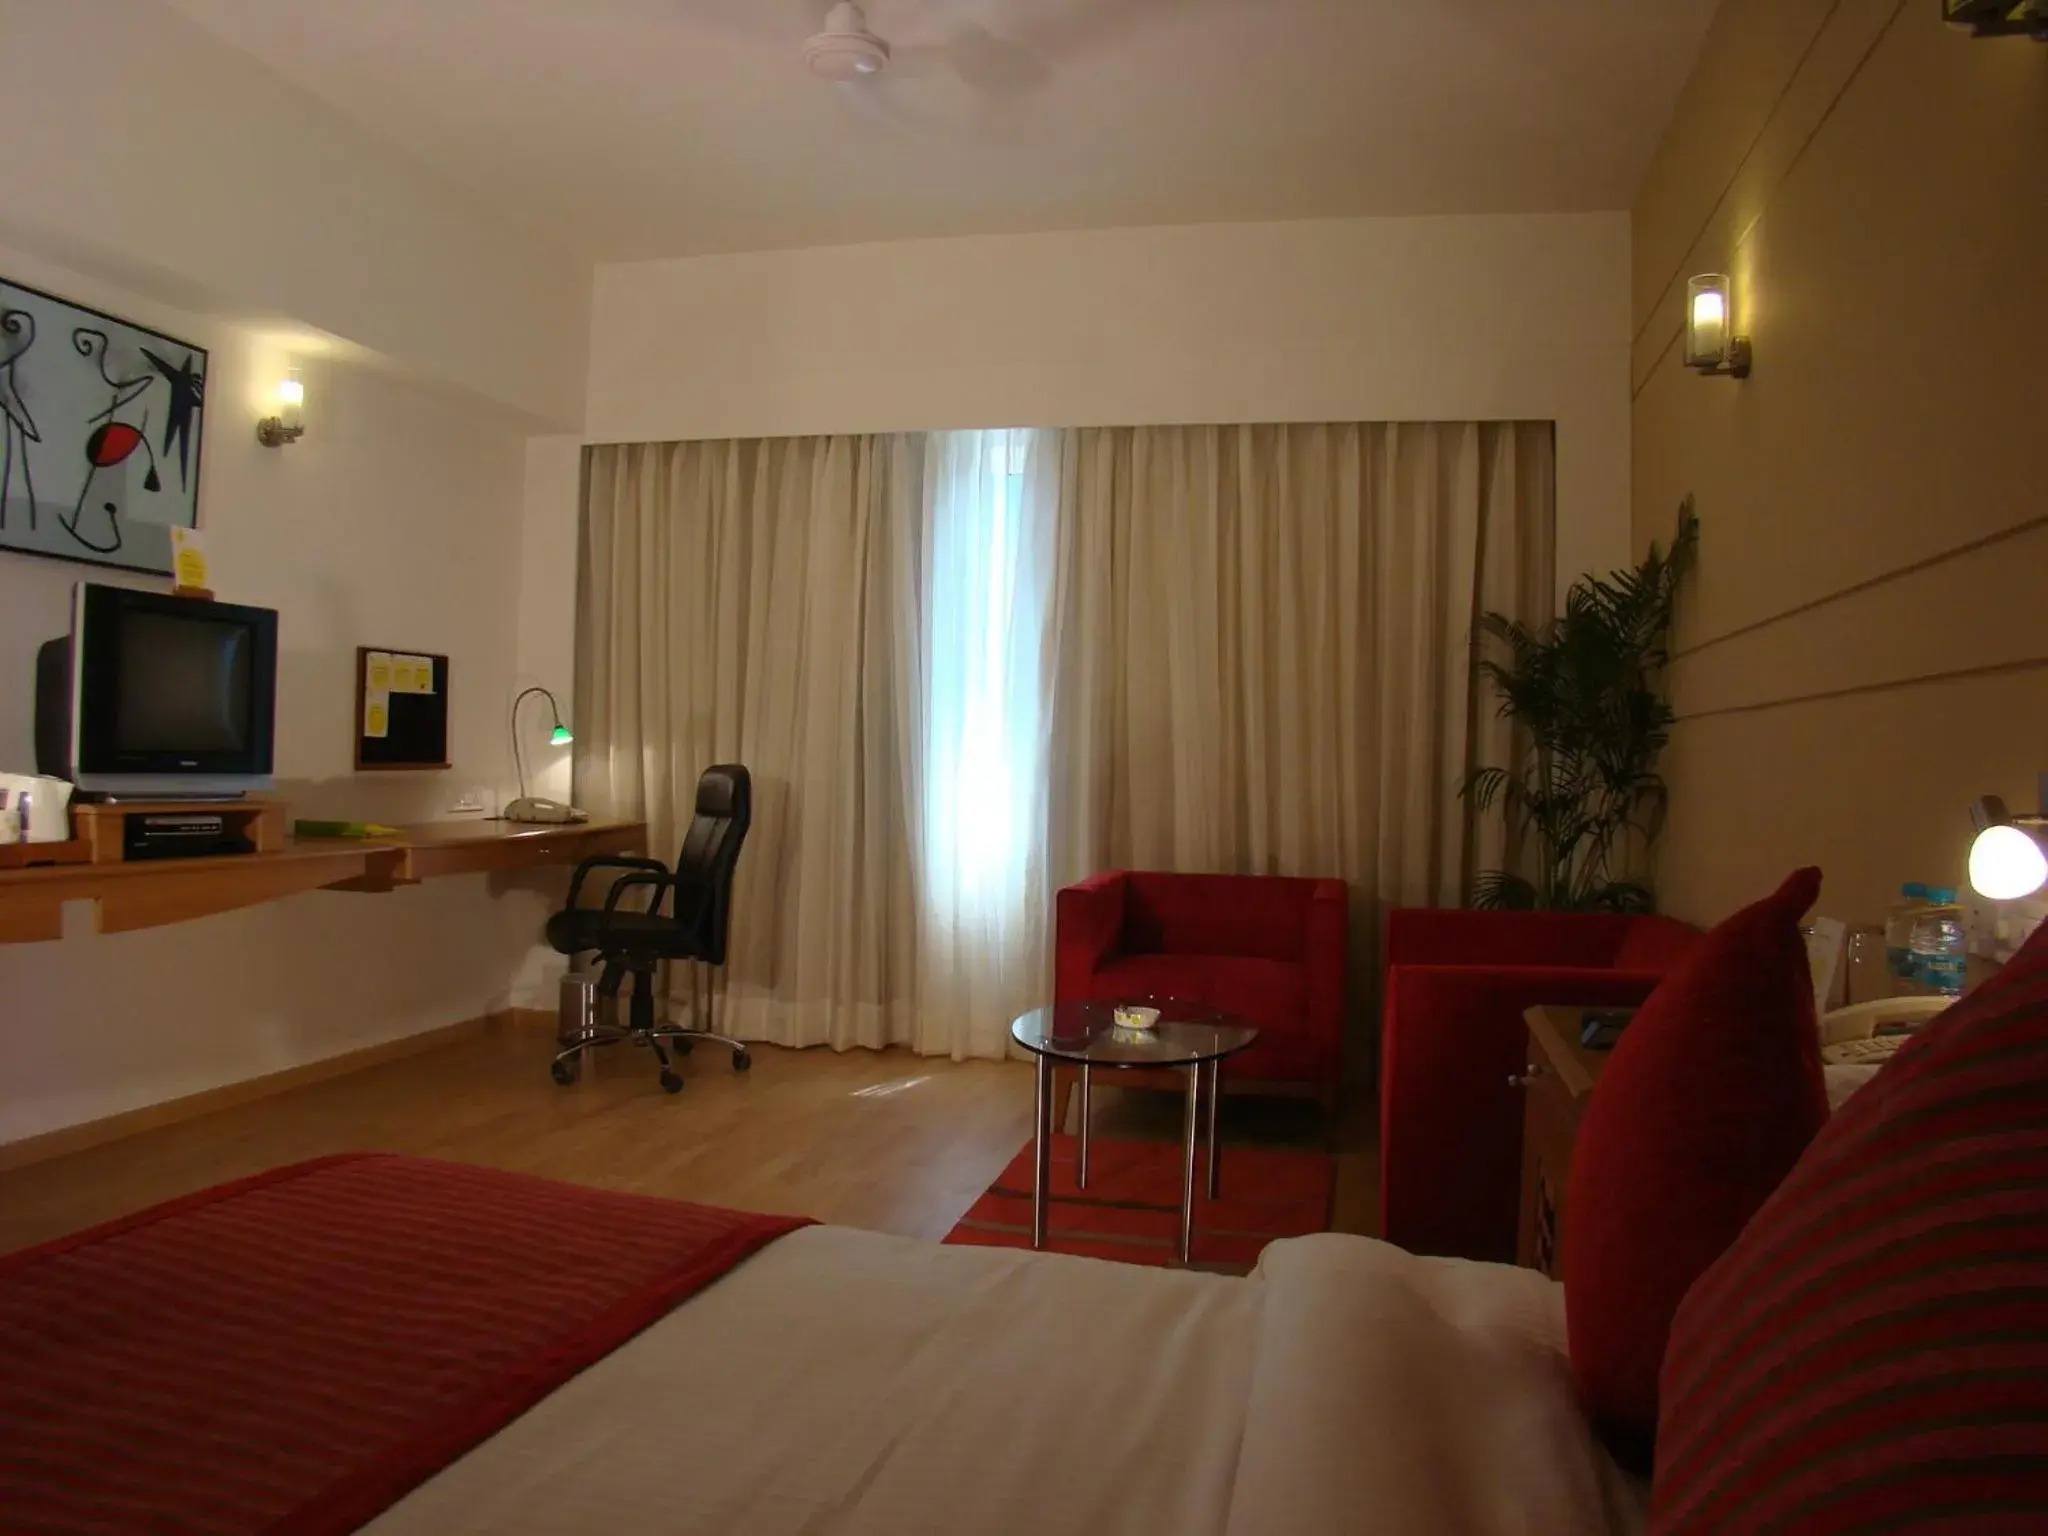 Bedroom, TV/Entertainment Center in Lemon Tree Hotel Chennai